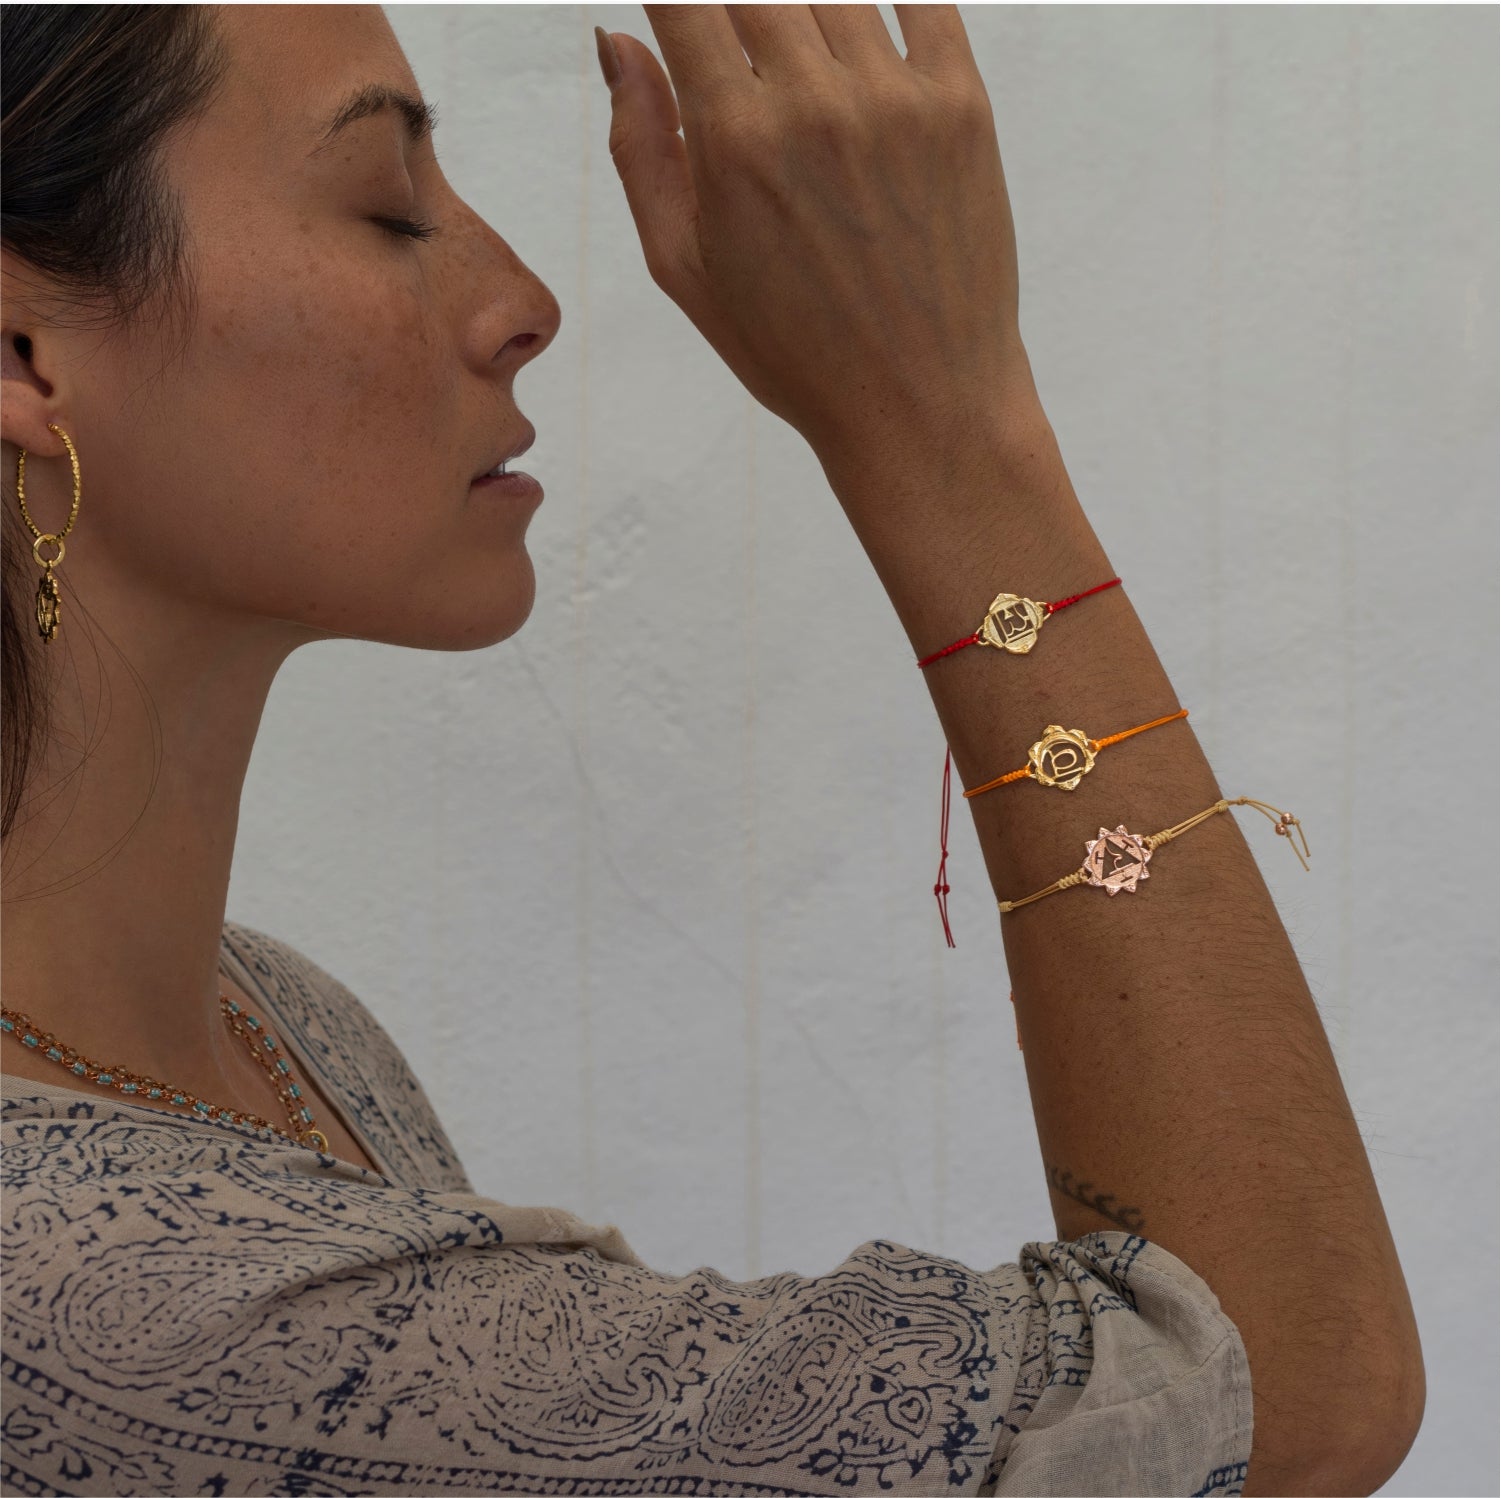 Die Yoga Lehrerin Steffi trägt ein hochwertig vergoldetes Sakral Chakra Armband von ETERNAL BLISS - Spiritueller Schmuck